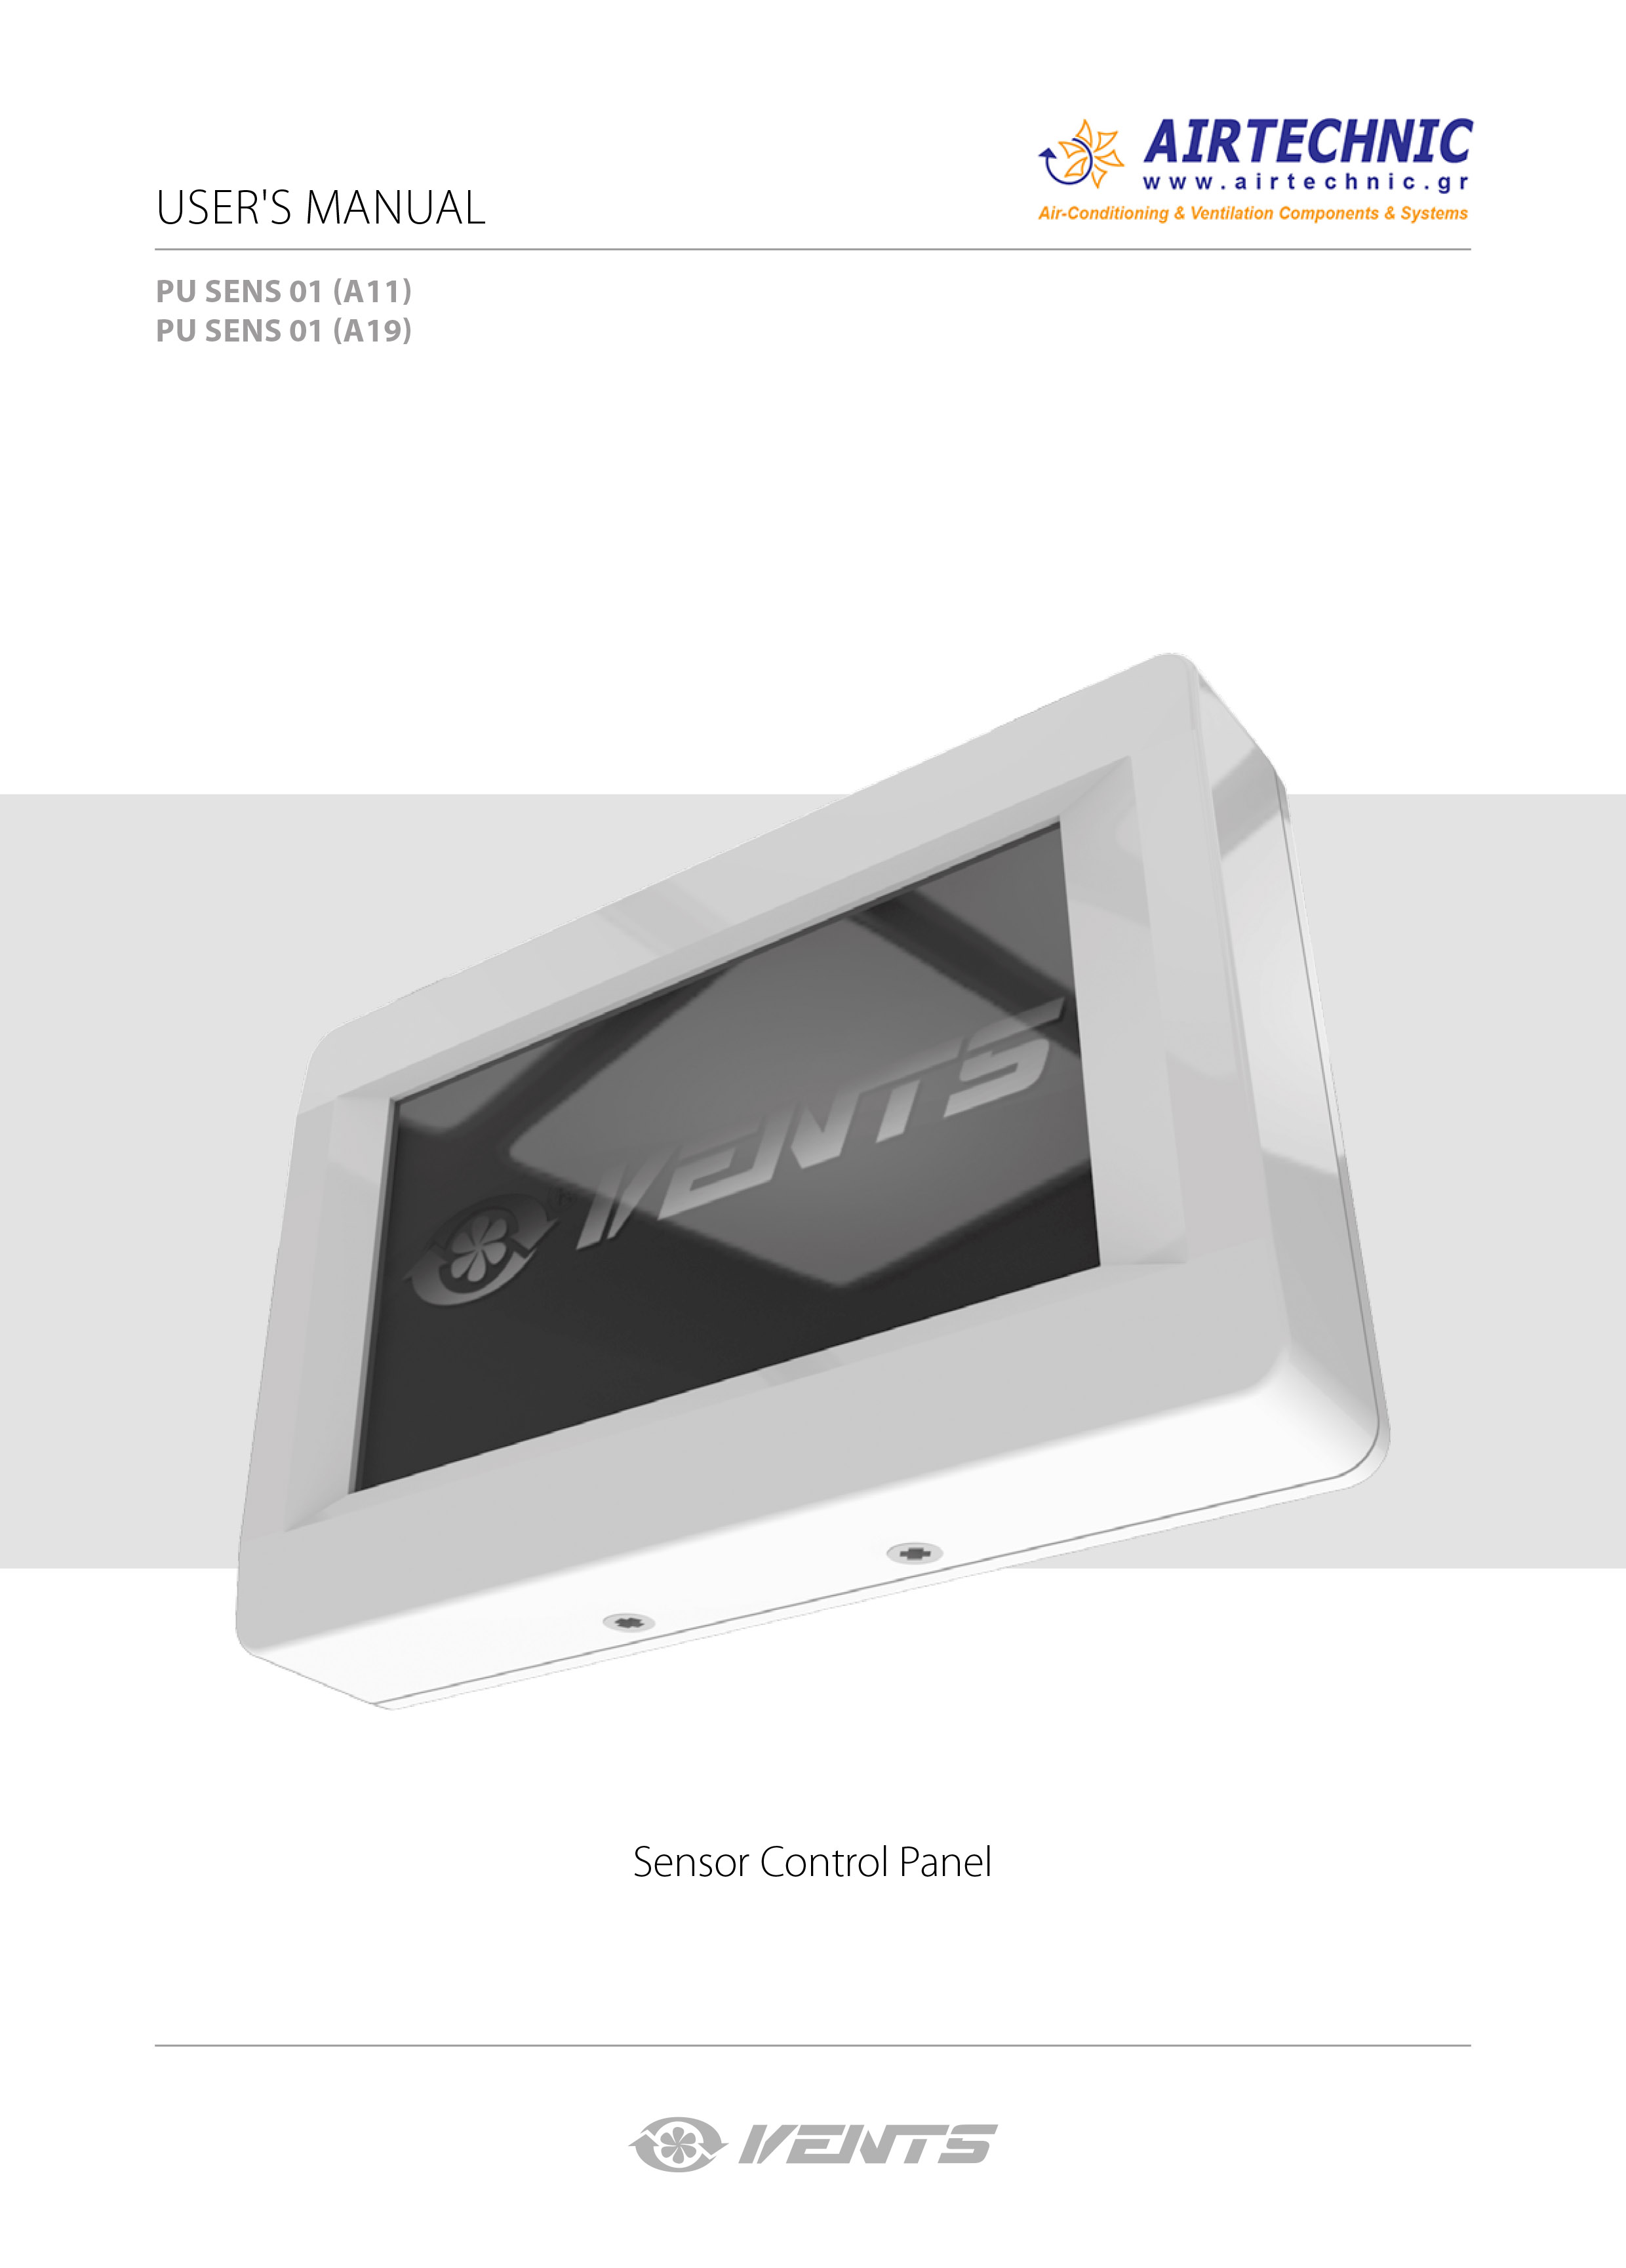 USER's MANUAL "Sensor control panel PU SENS 01 A11/A19"